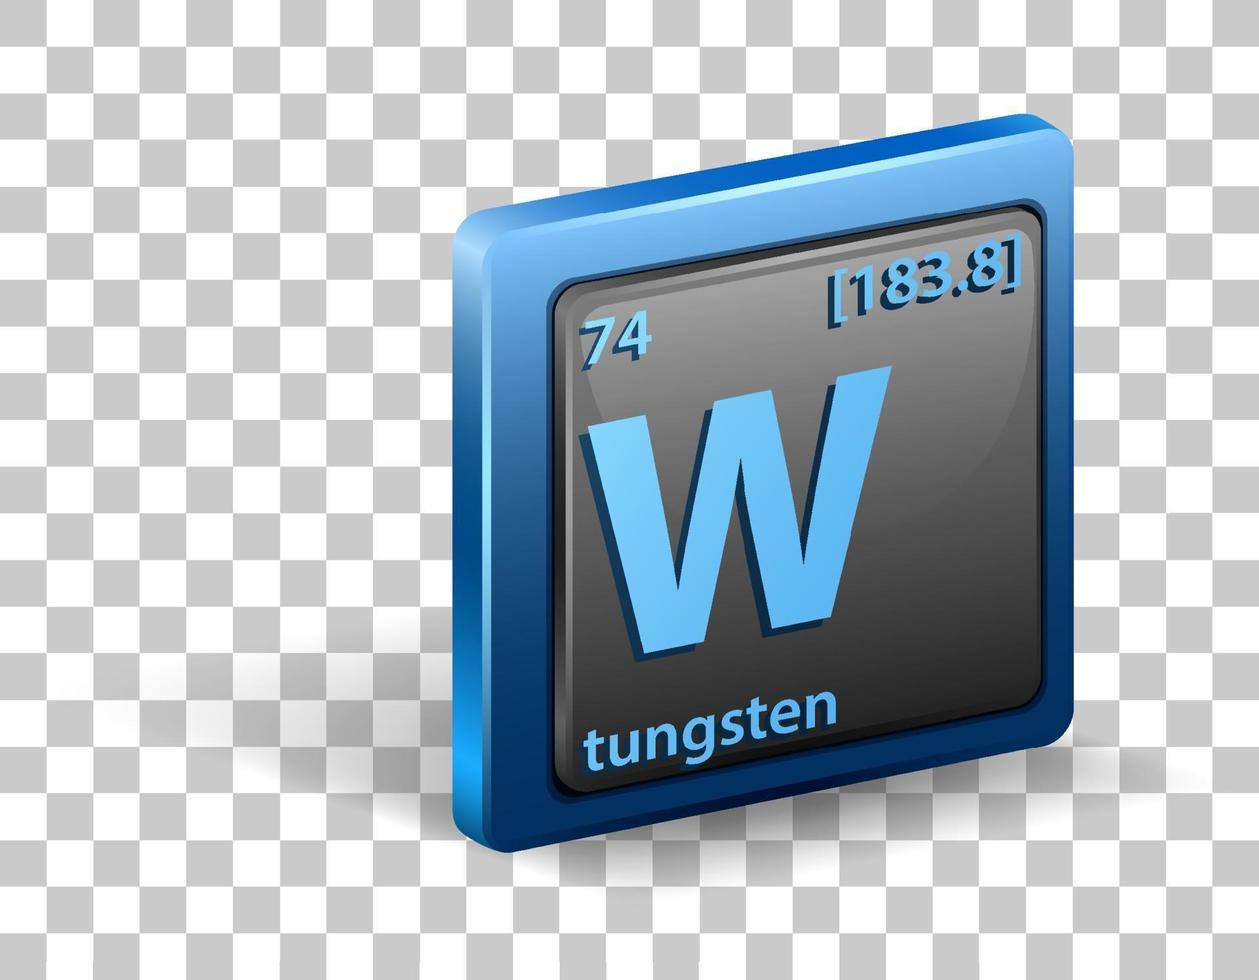 élément chimique de tungstène. symbole chimique avec numéro atomique et masse atomique. vecteur